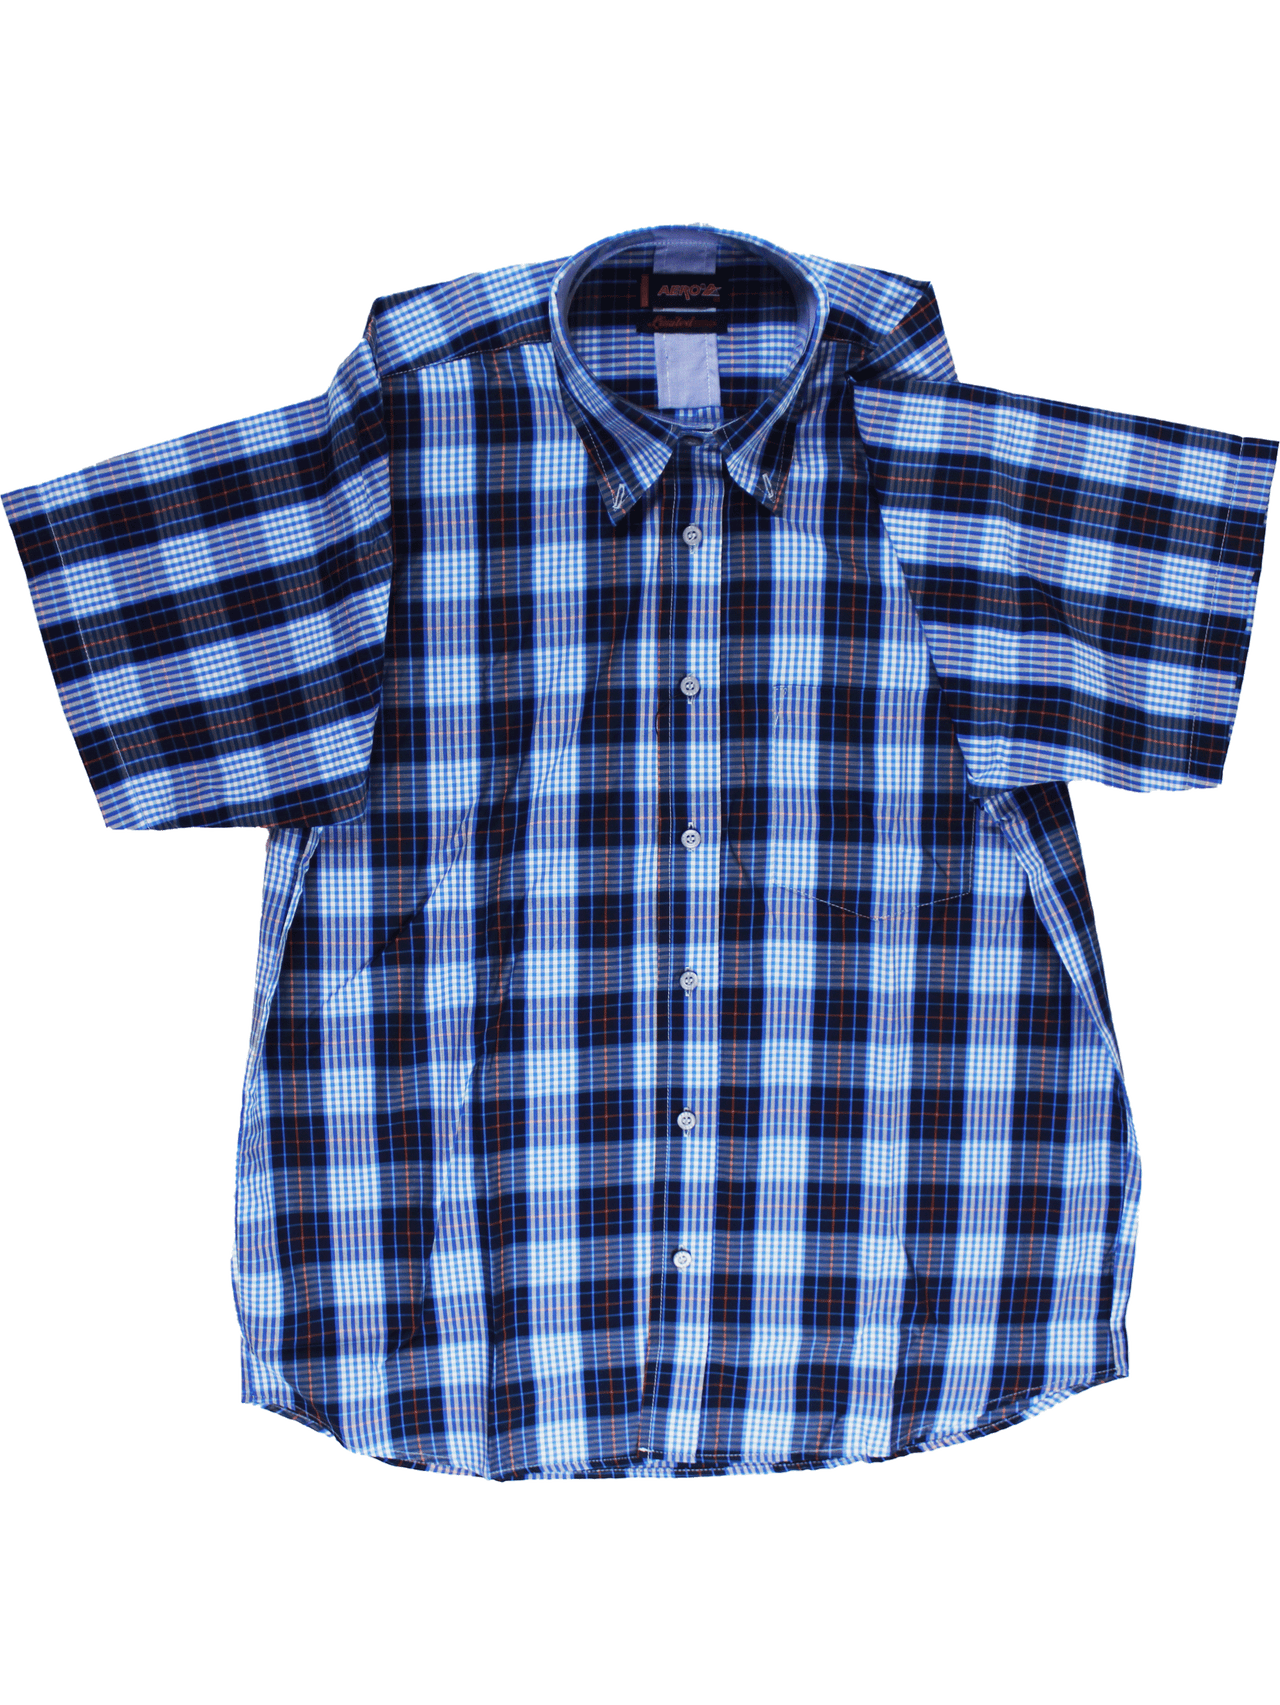 AERO Blue Checkered S/S Shirt